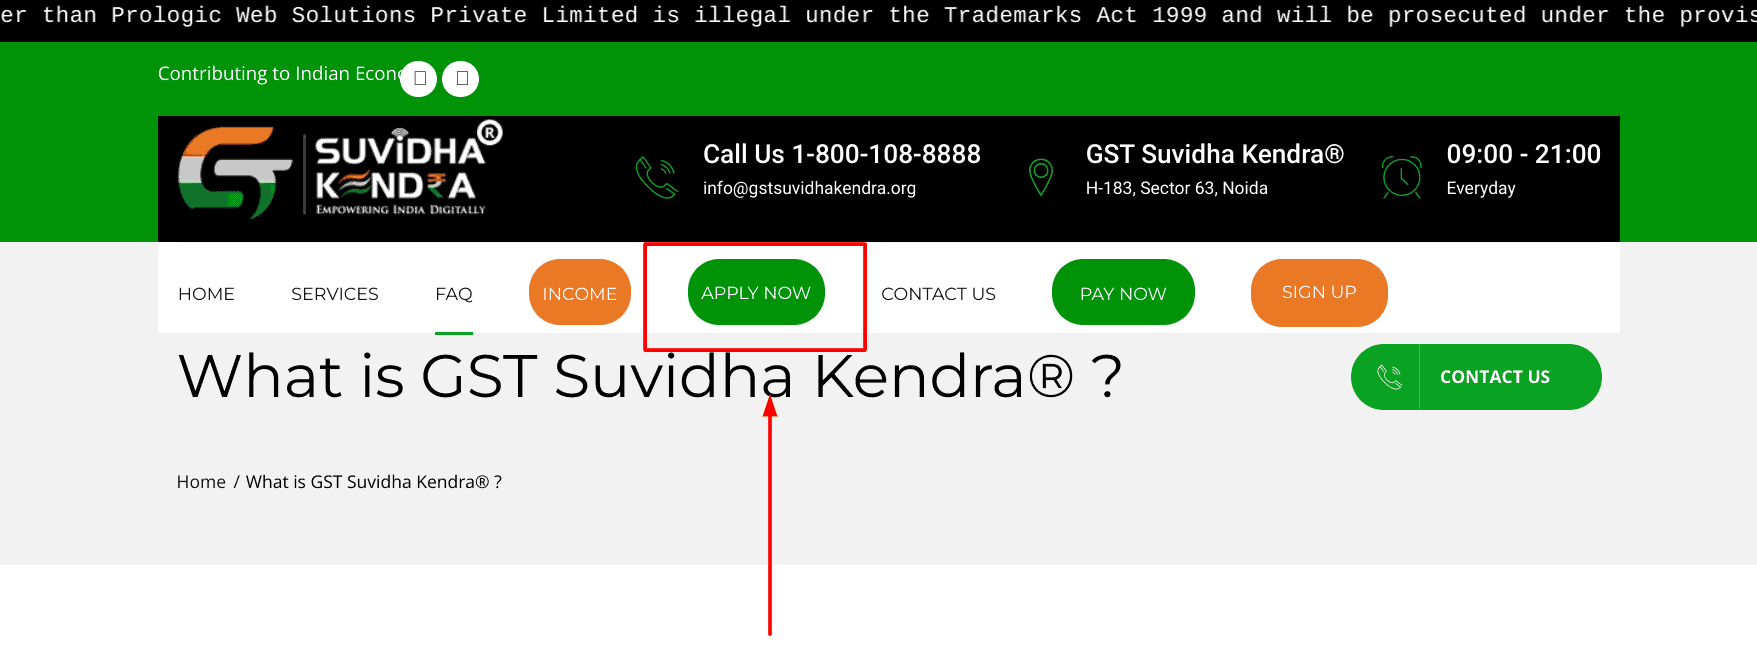 जीएसटी सुविधा केंद्र कैसे खोलें: GST Suvidha Kendra Franchise Registration